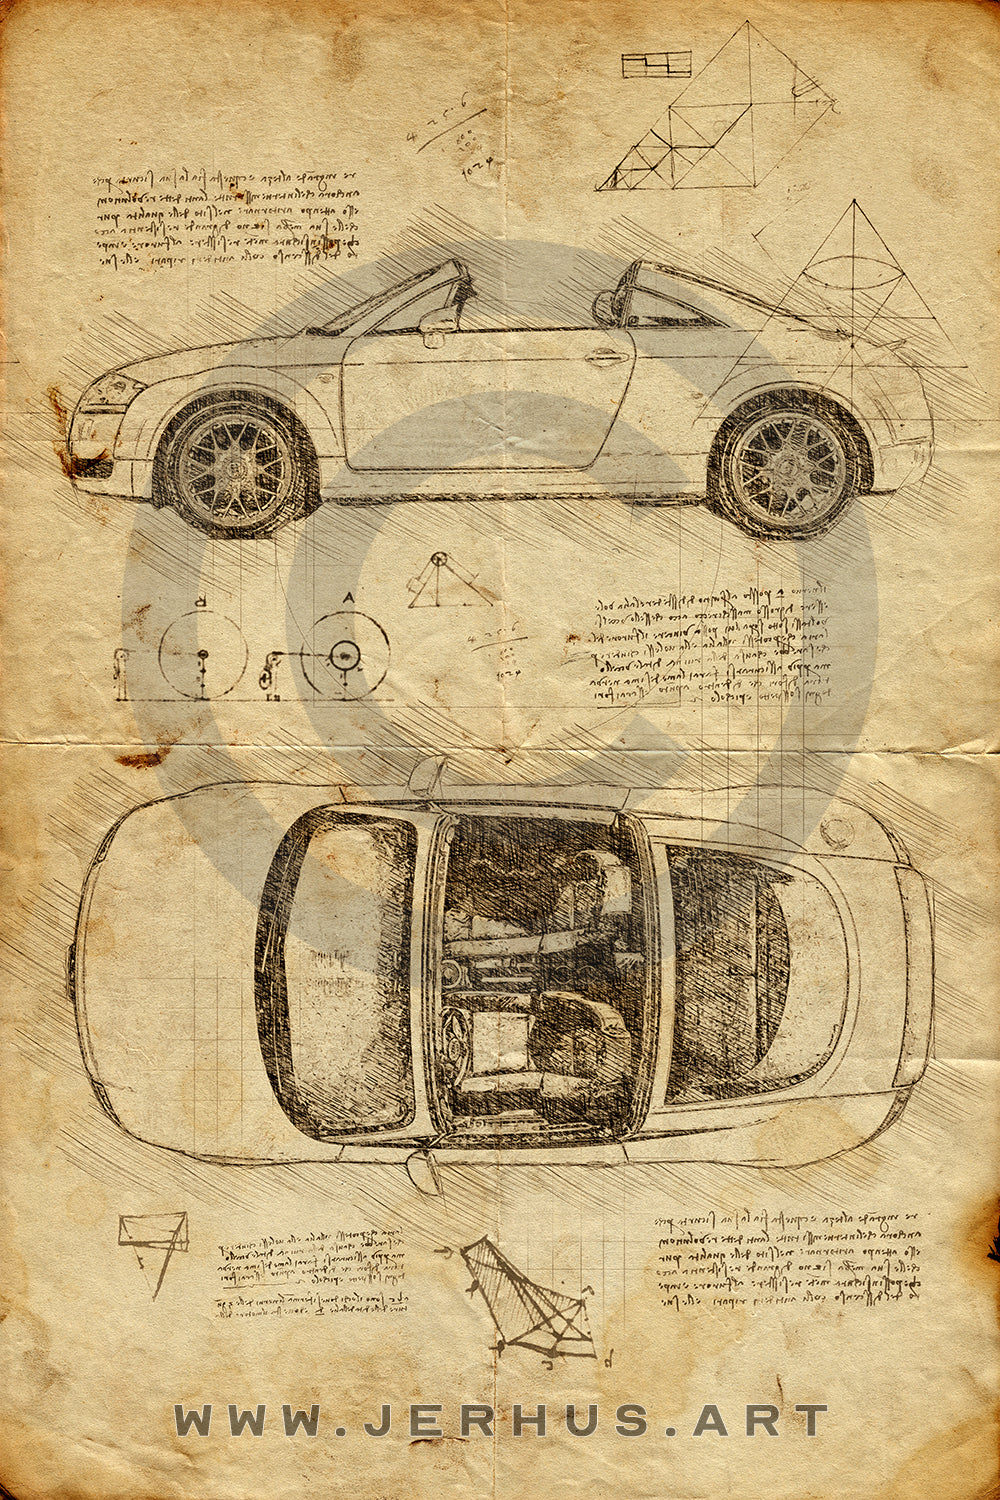 Audi TT Sky Concept - Da Vinci Style